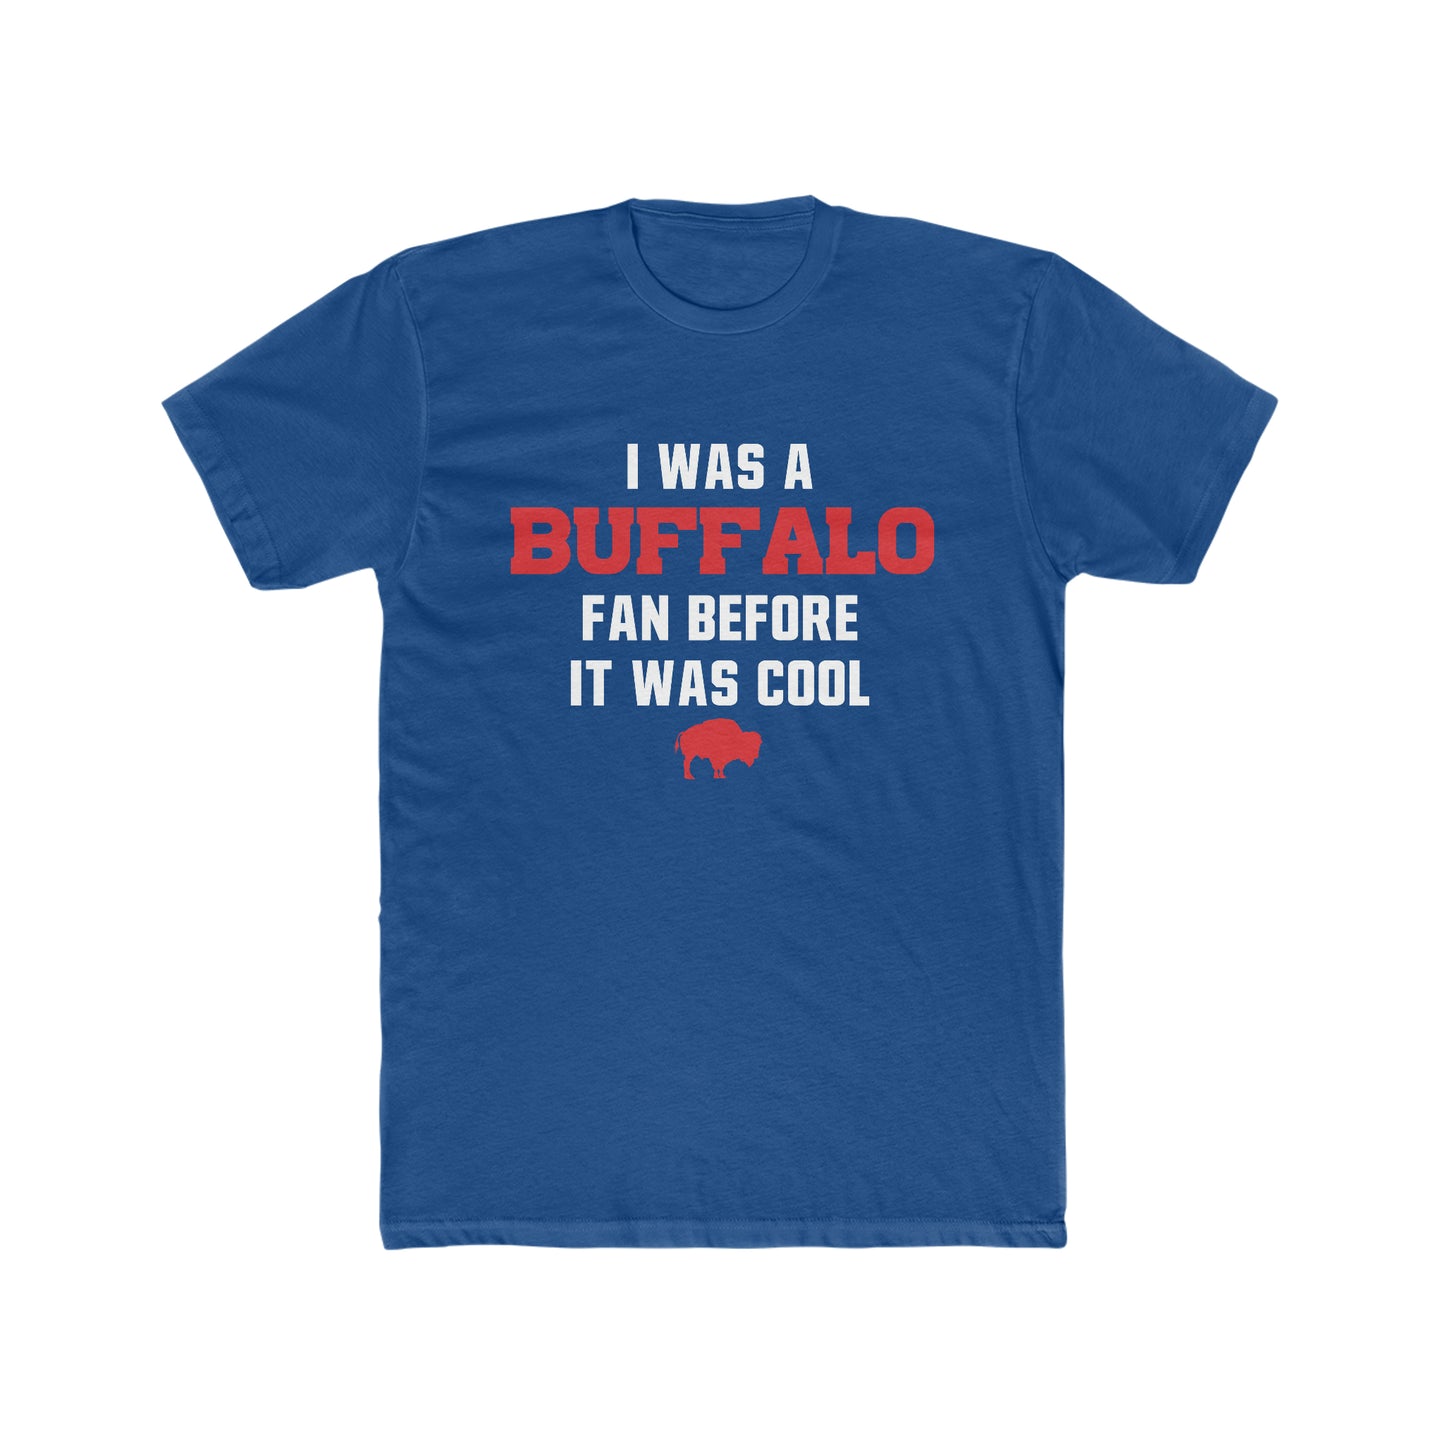 Buffalo Bills - I was a Buffalo Fan Before It was Cool UNISEX Cotton Crew Tee